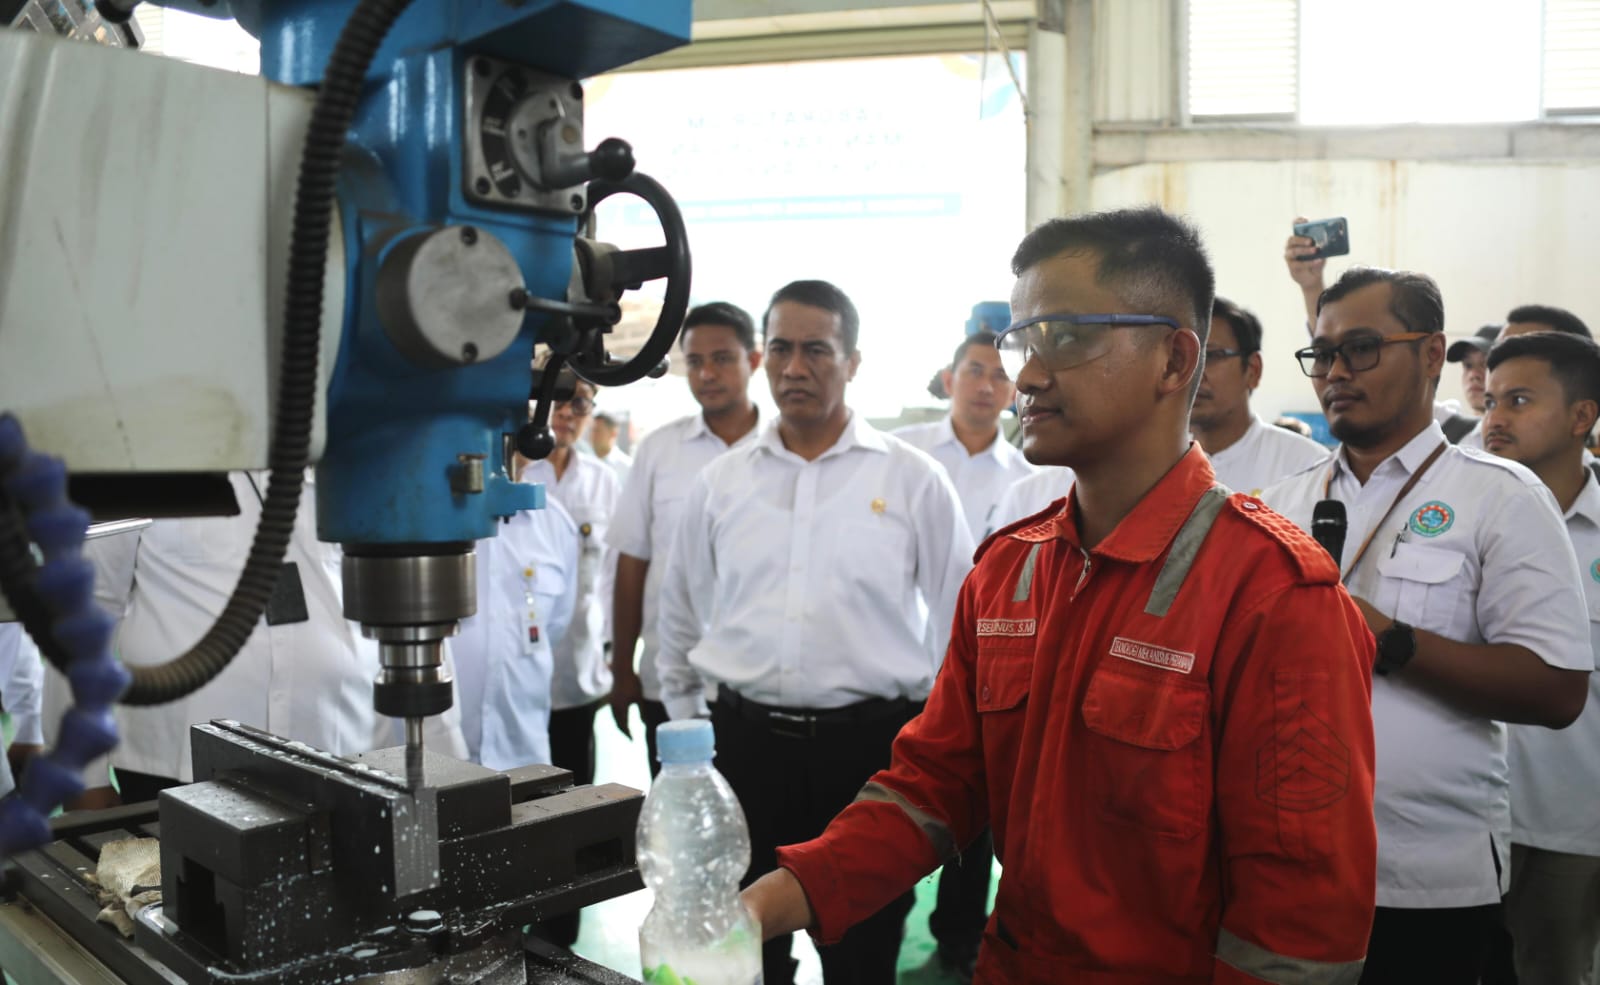 Menteri Pertanian (Mentan) Andi Amran Sulaiman mengajak mahasiswa Politeknik Enjinering Pertanian Indonesia (PEPI) untuk menjadi penggerak utama inovasi dan pencipta lapangan kerja di sektor pertanian modern